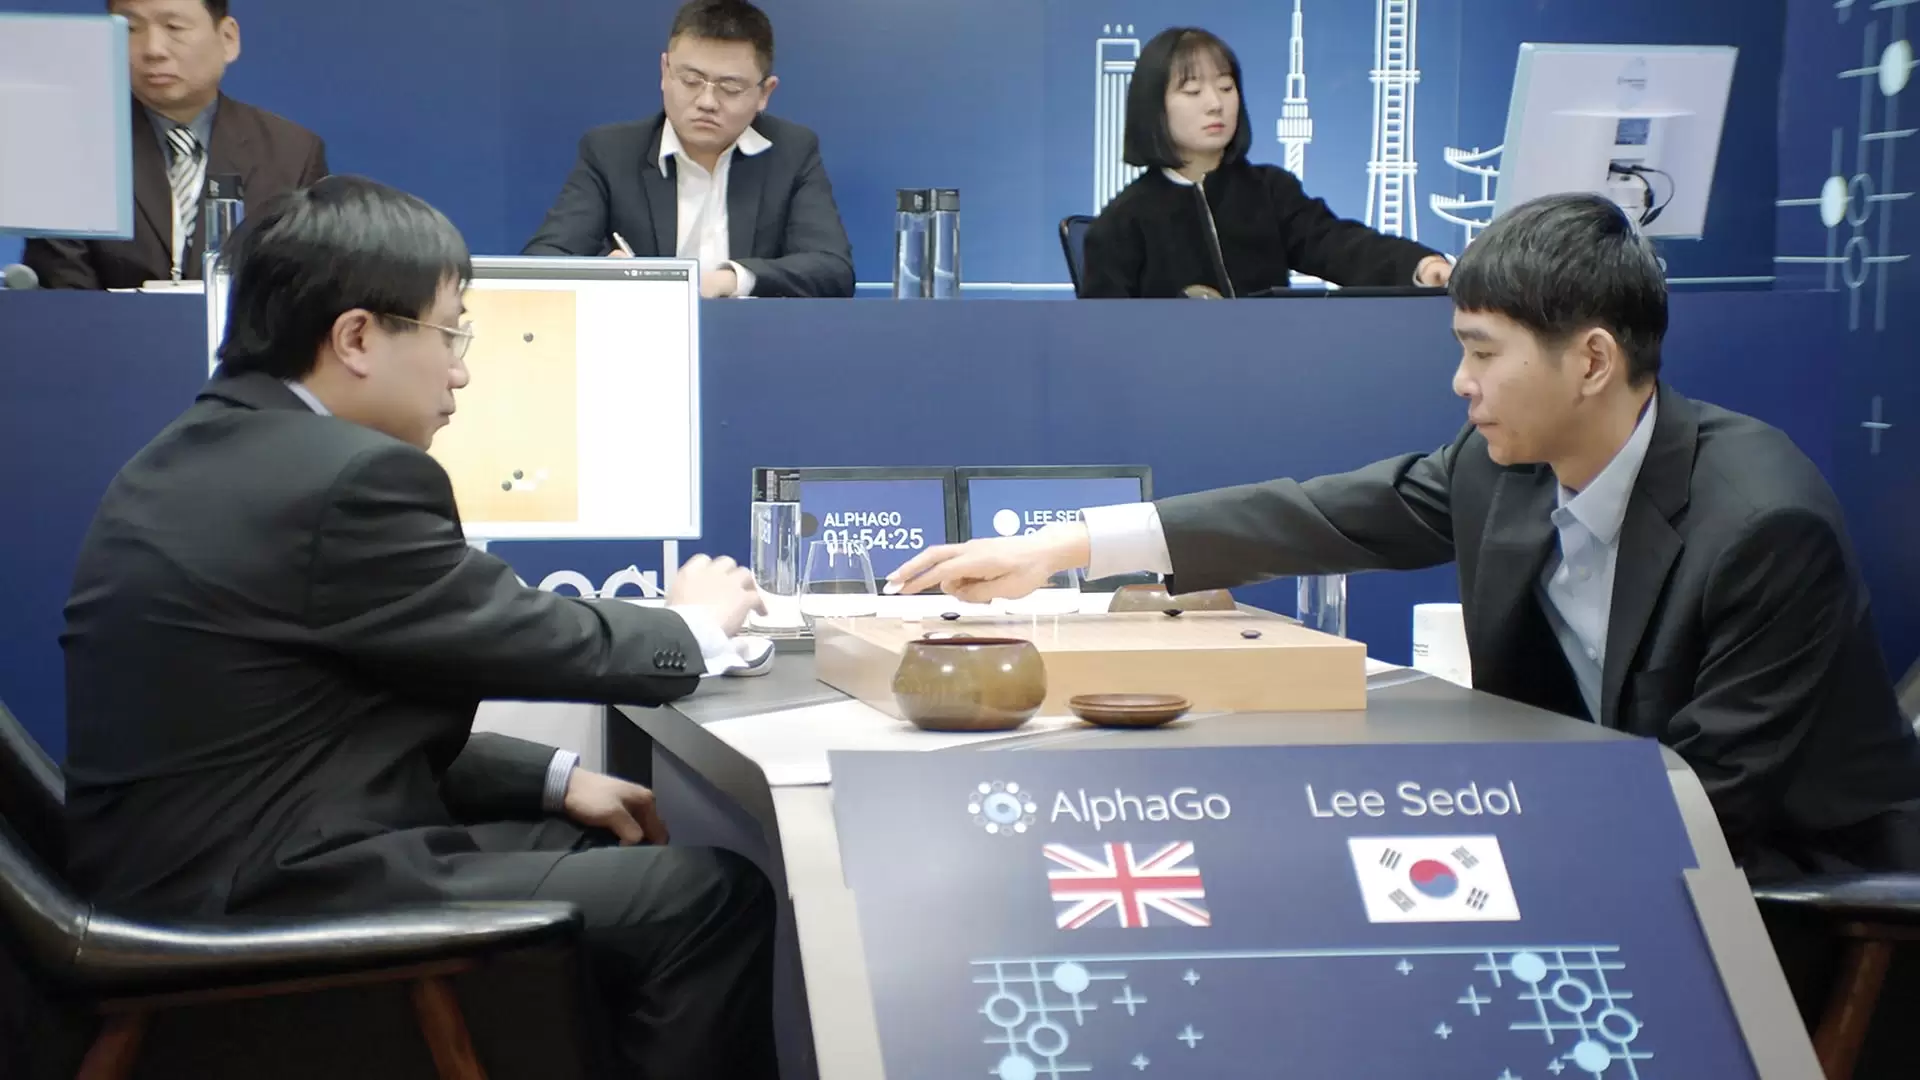 دانلود مستند AlphaGo 2017